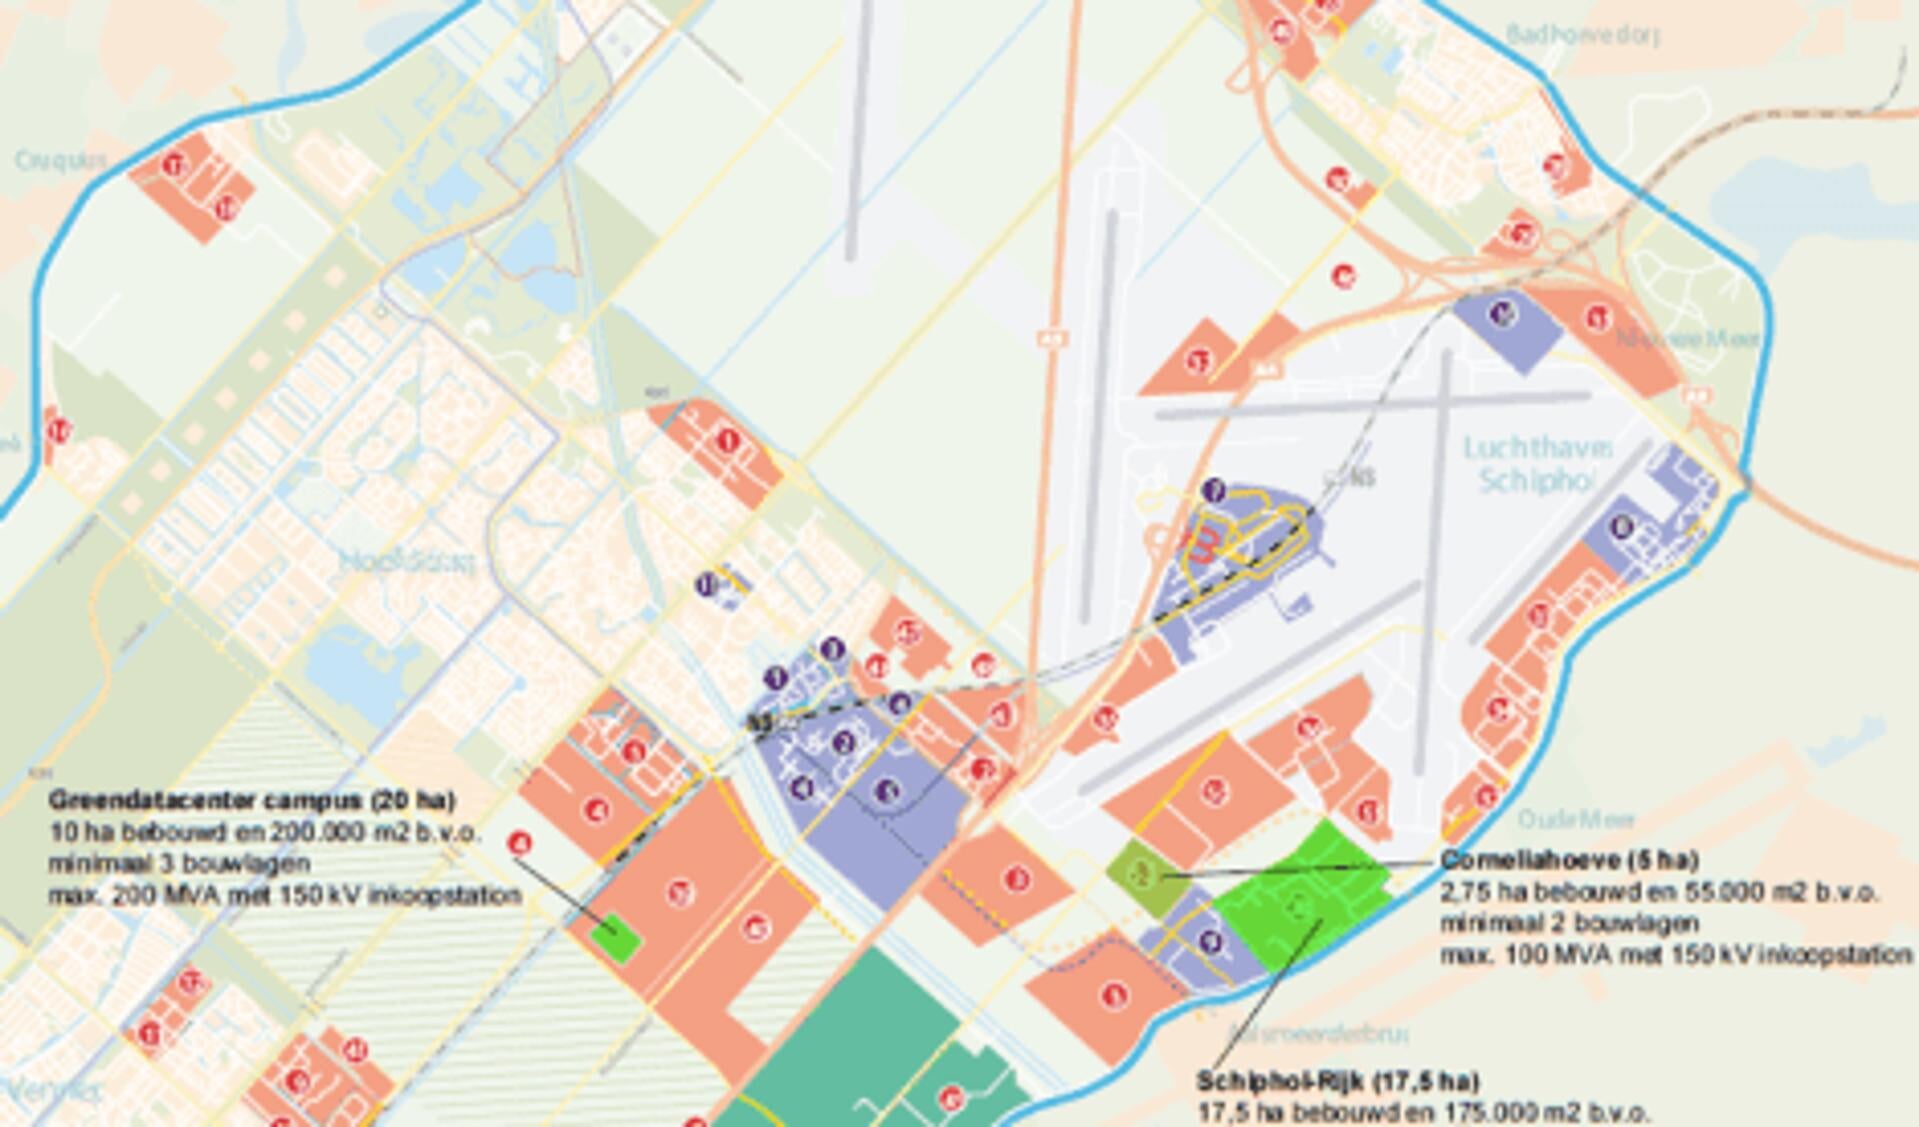 De vier ontwikkellocaties voor datacenters zijn de groen gekleurde vlakken in bedrijventerrein PolanenPark, Schiphol-Rijk, Schiphol Trade Park (STP) en Corneliahoeve.